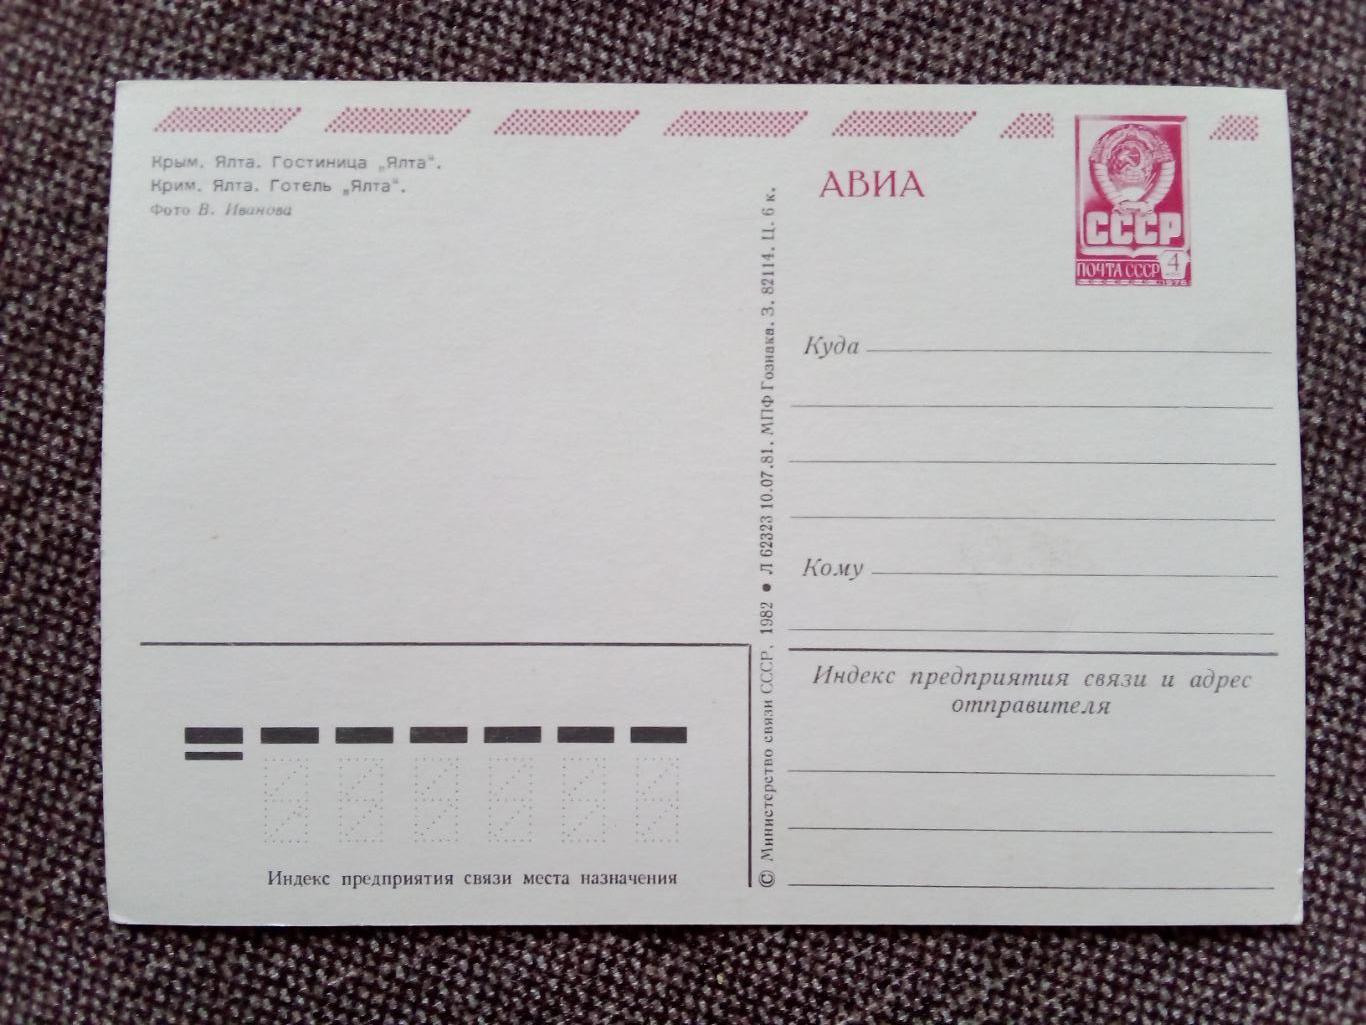 Города СССР : Ялта (Крым) - Гостиница Ялта 1982 г. (почтовая открытка с маркой 1